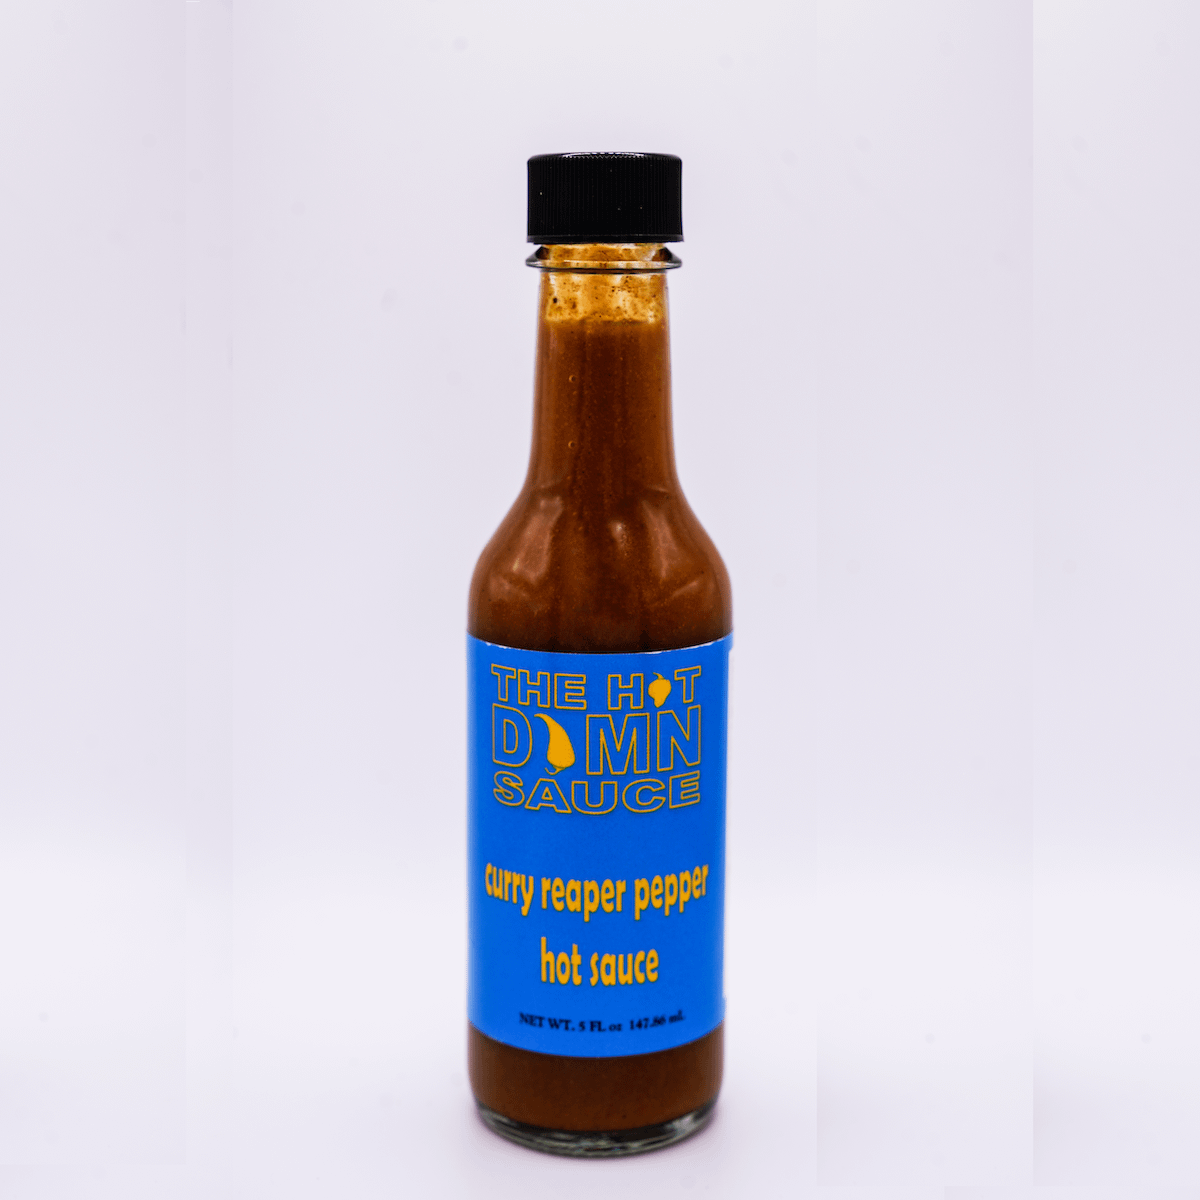 curry-reaper-pepper-hot-sauce-by-got-damn-sauce